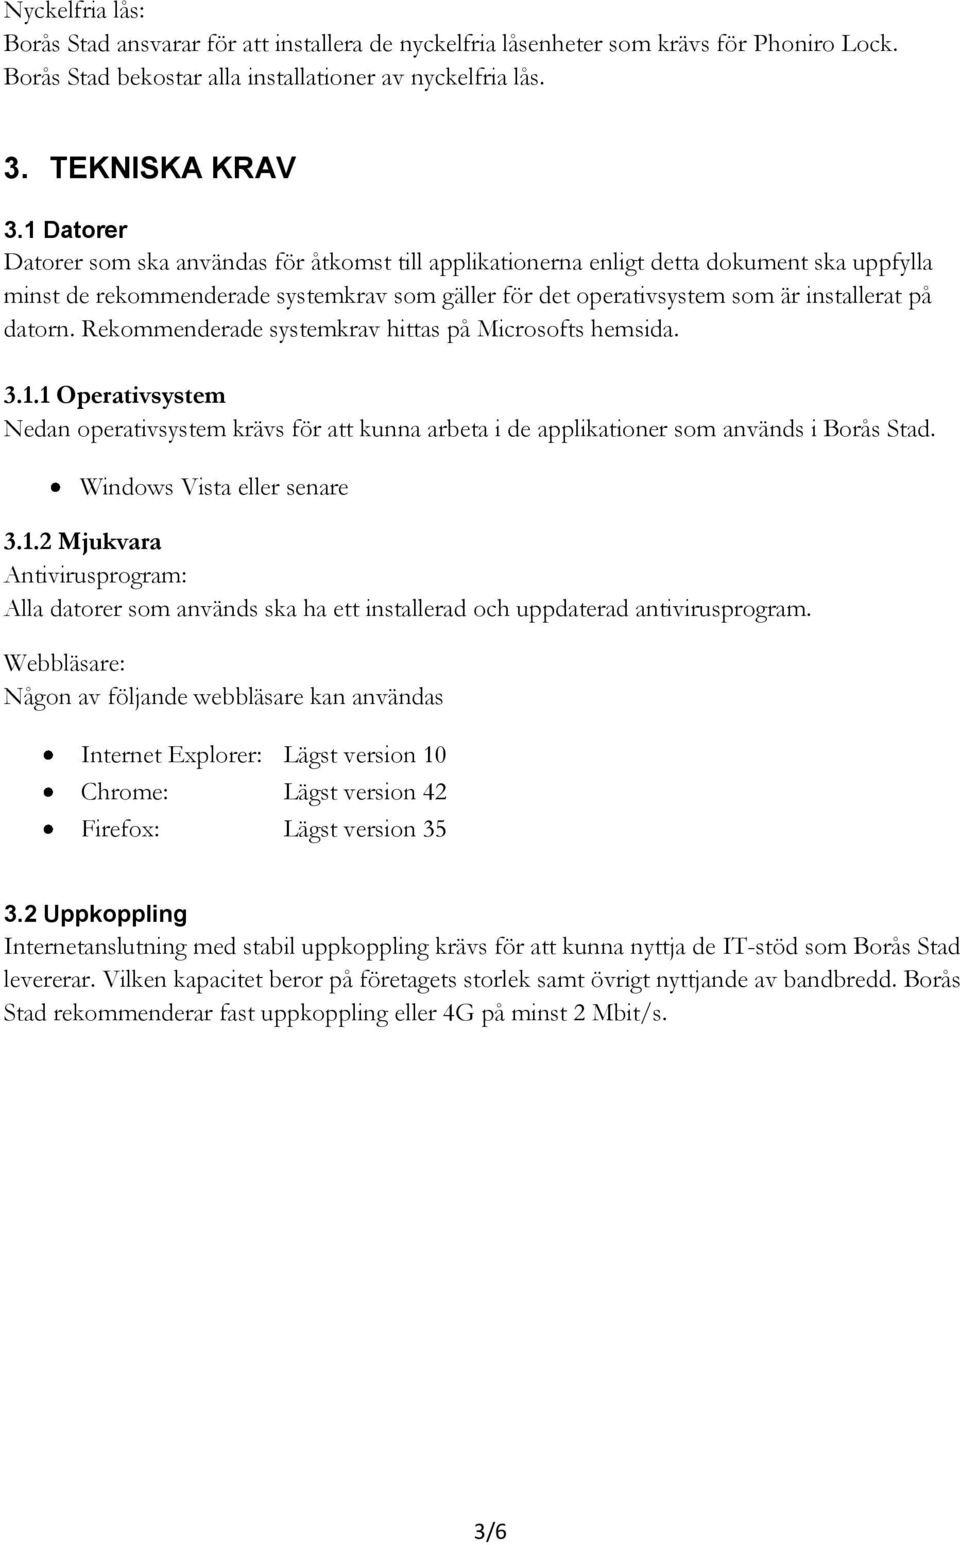 datorn. Rekommenderade systemkrav hittas på Microsofts hemsida. 3.1.1 Operativsystem Nedan operativsystem krävs för att kunna arbeta i de applikationer som används i Borås Stad.